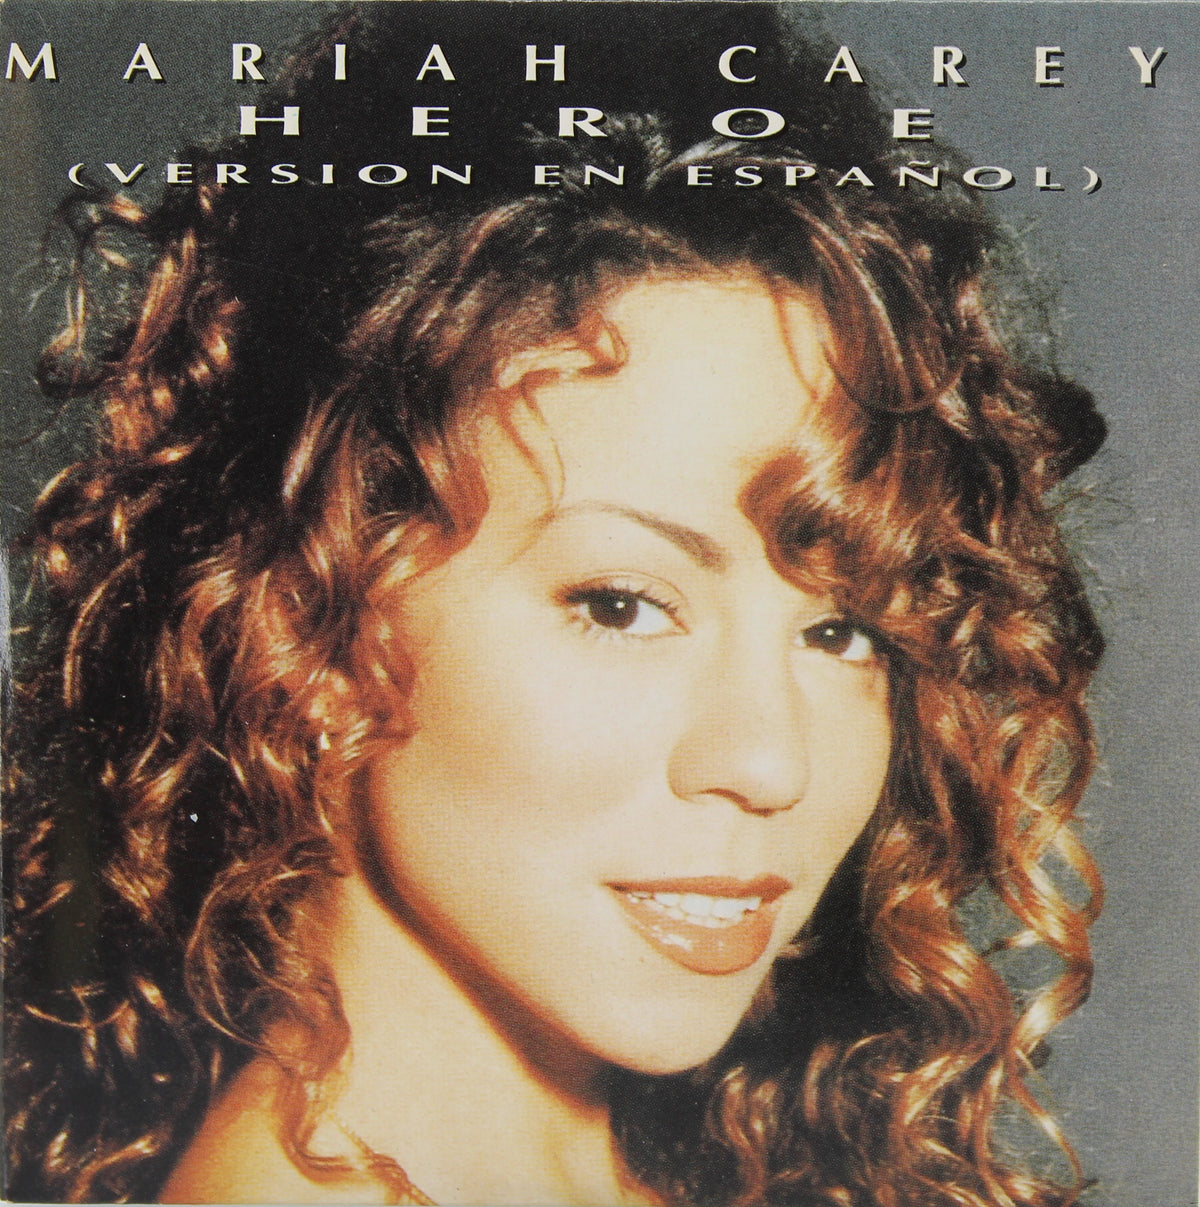 Mariah Carey – Heroe (Version En Español), CD Single, Spain 1995 (CD 615)